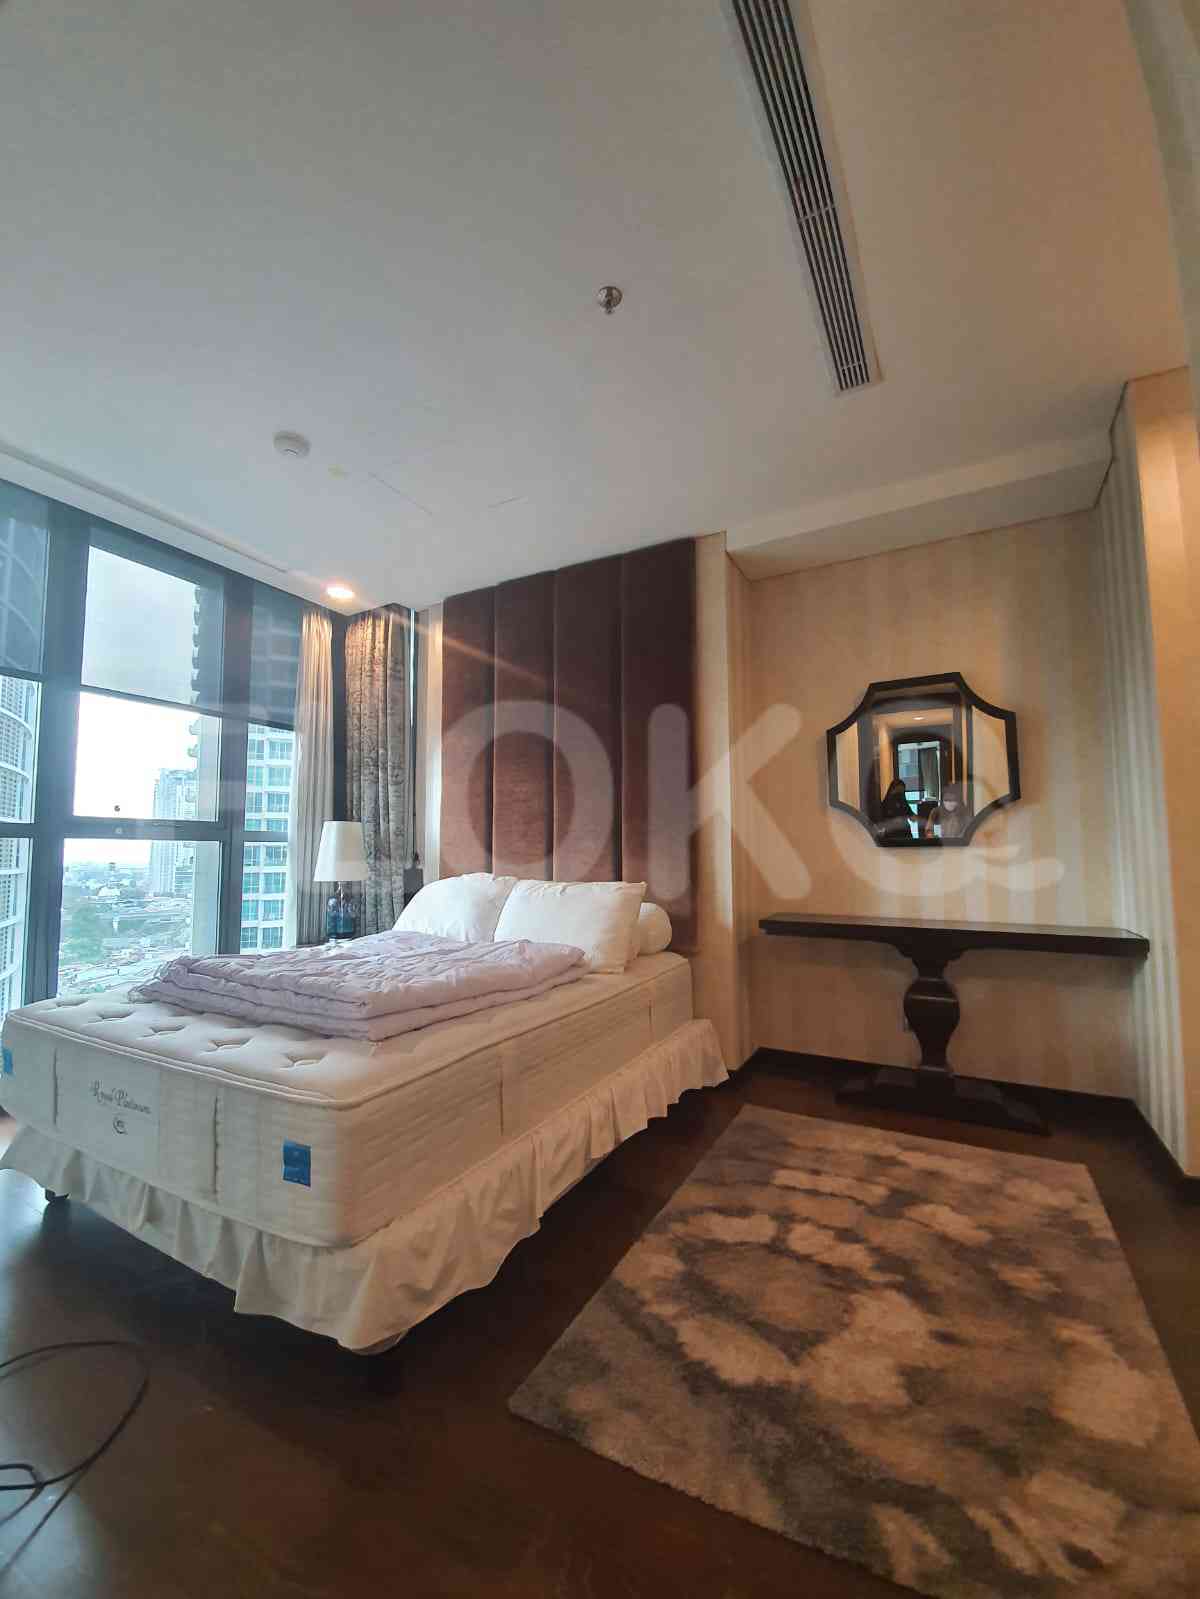 3 Bedroom on 15th Floor for Rent in Kemang Village Residence - fke5fe 4